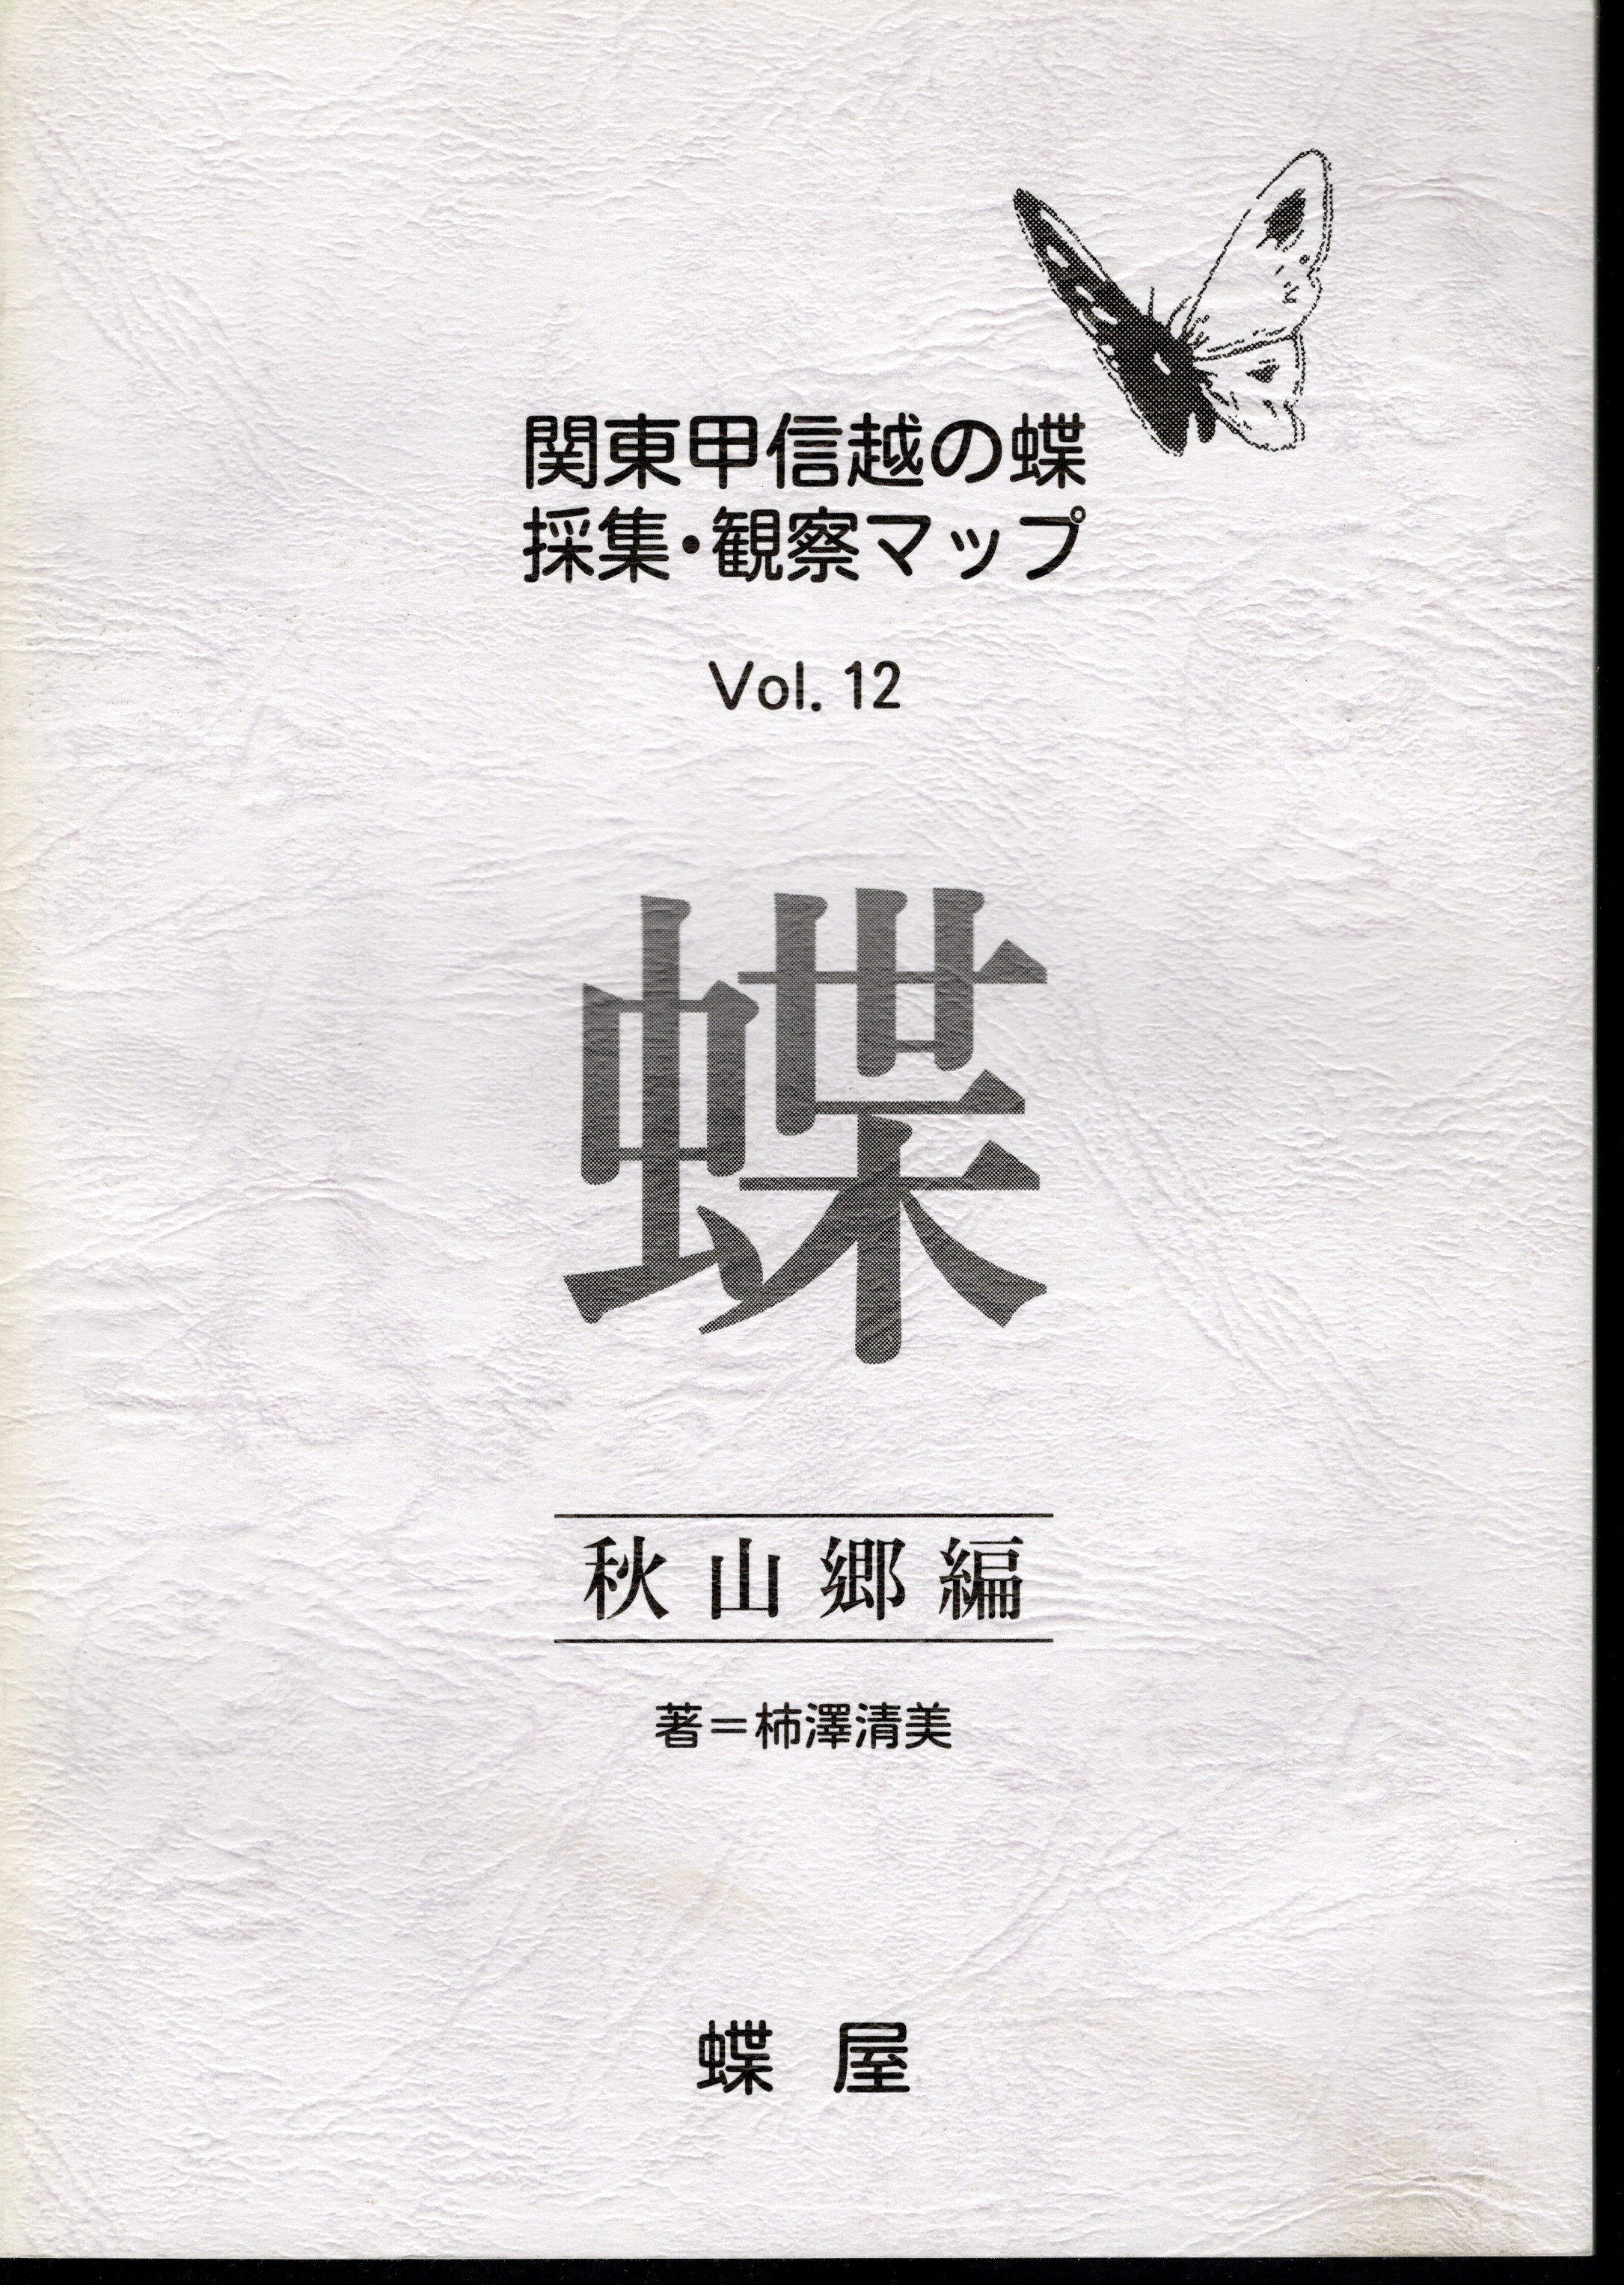 関東甲信越の蝶 採集・観察マップ Vol.12 秋山郷編(柿澤清美) / 古本 